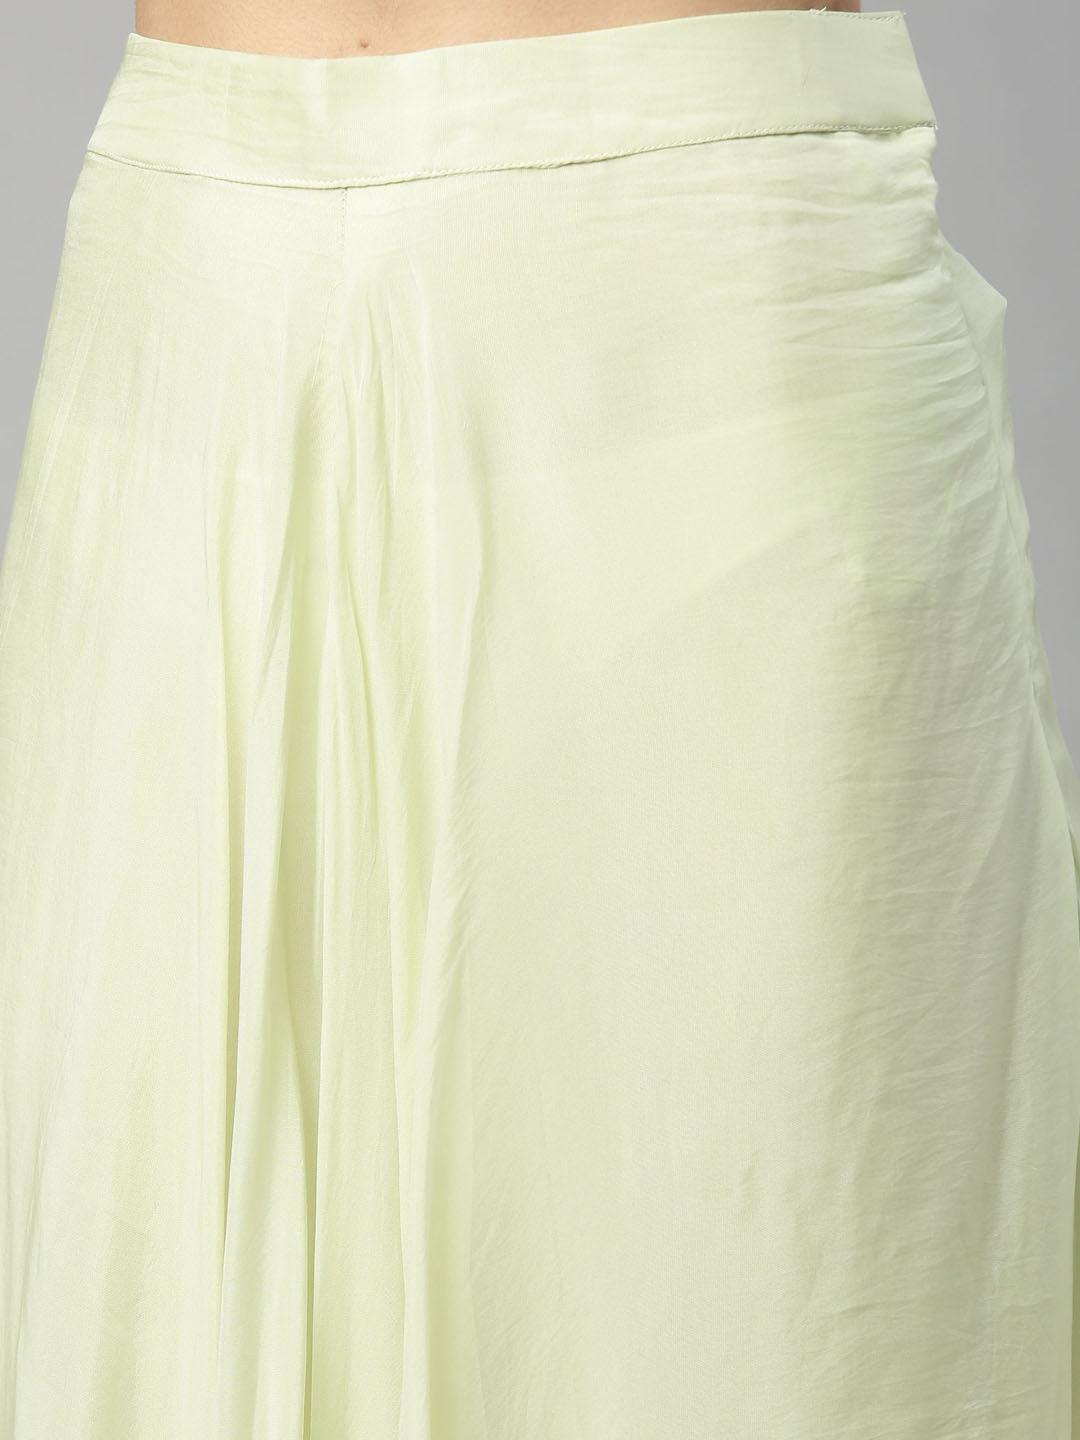 Neeru's Pista Color Georgette Fabric Suit-Peplum